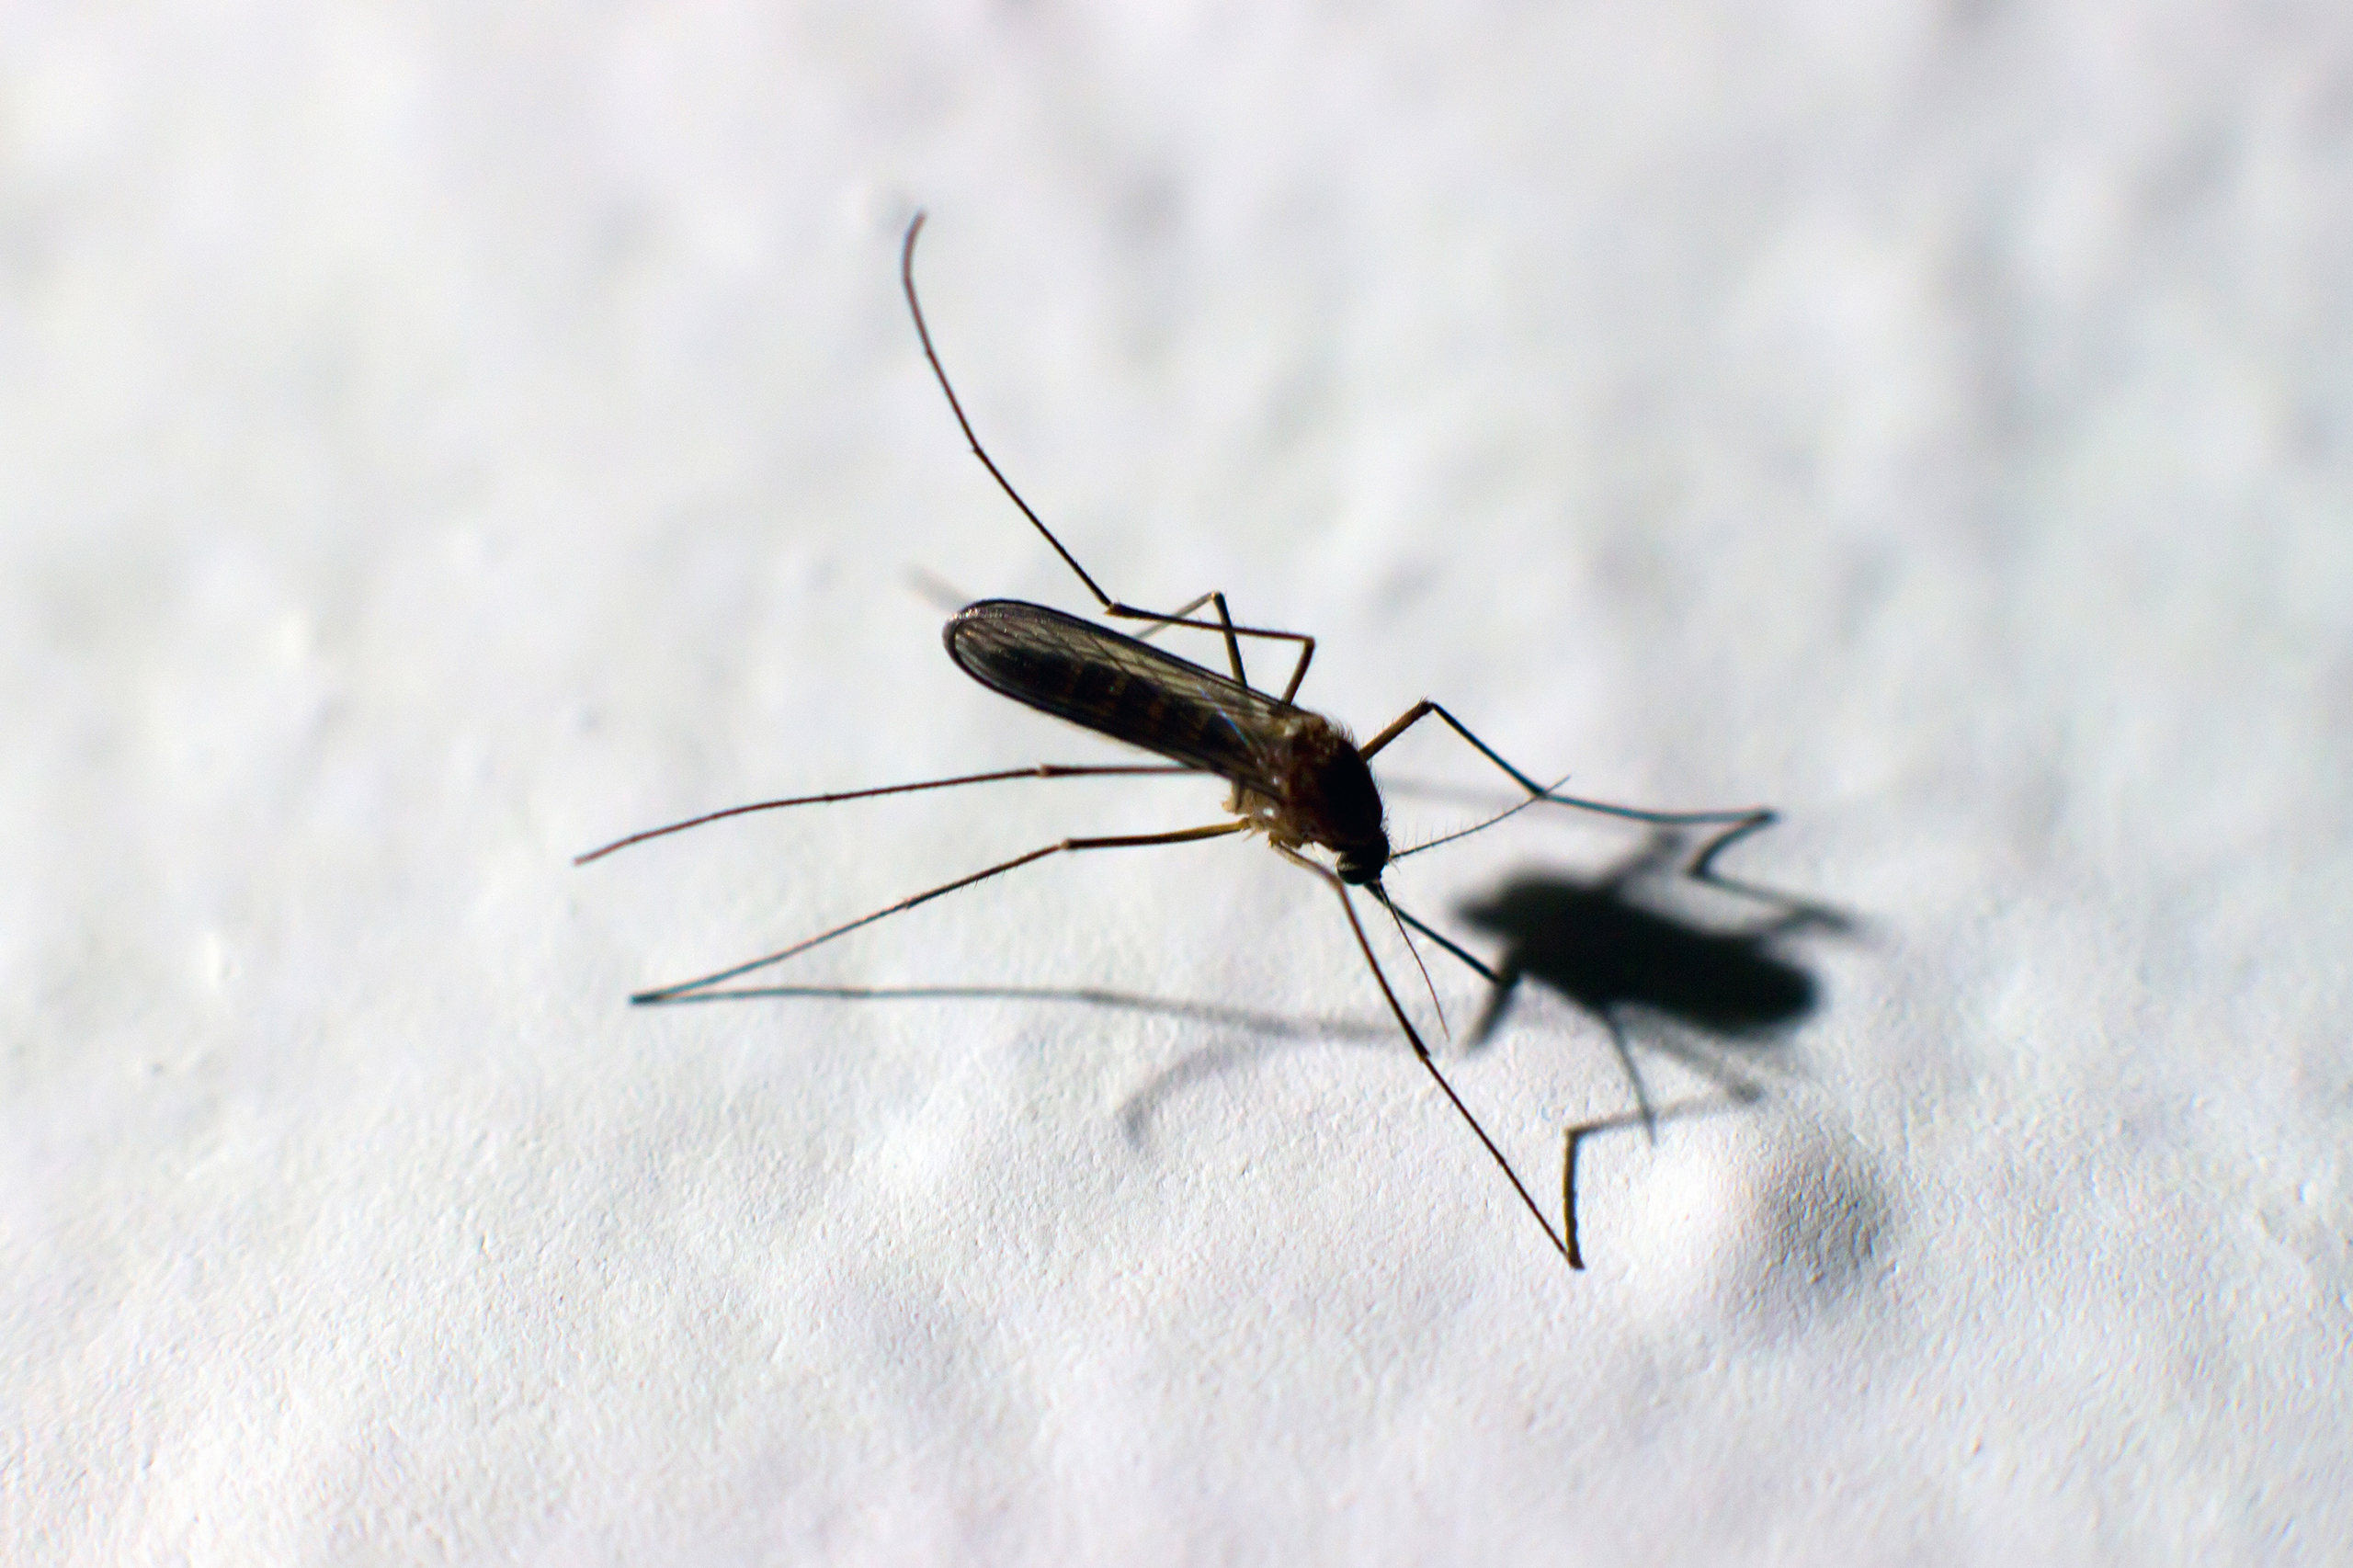 Zika virus, mosquito, Dengue, chikungunya fever, microcephaly